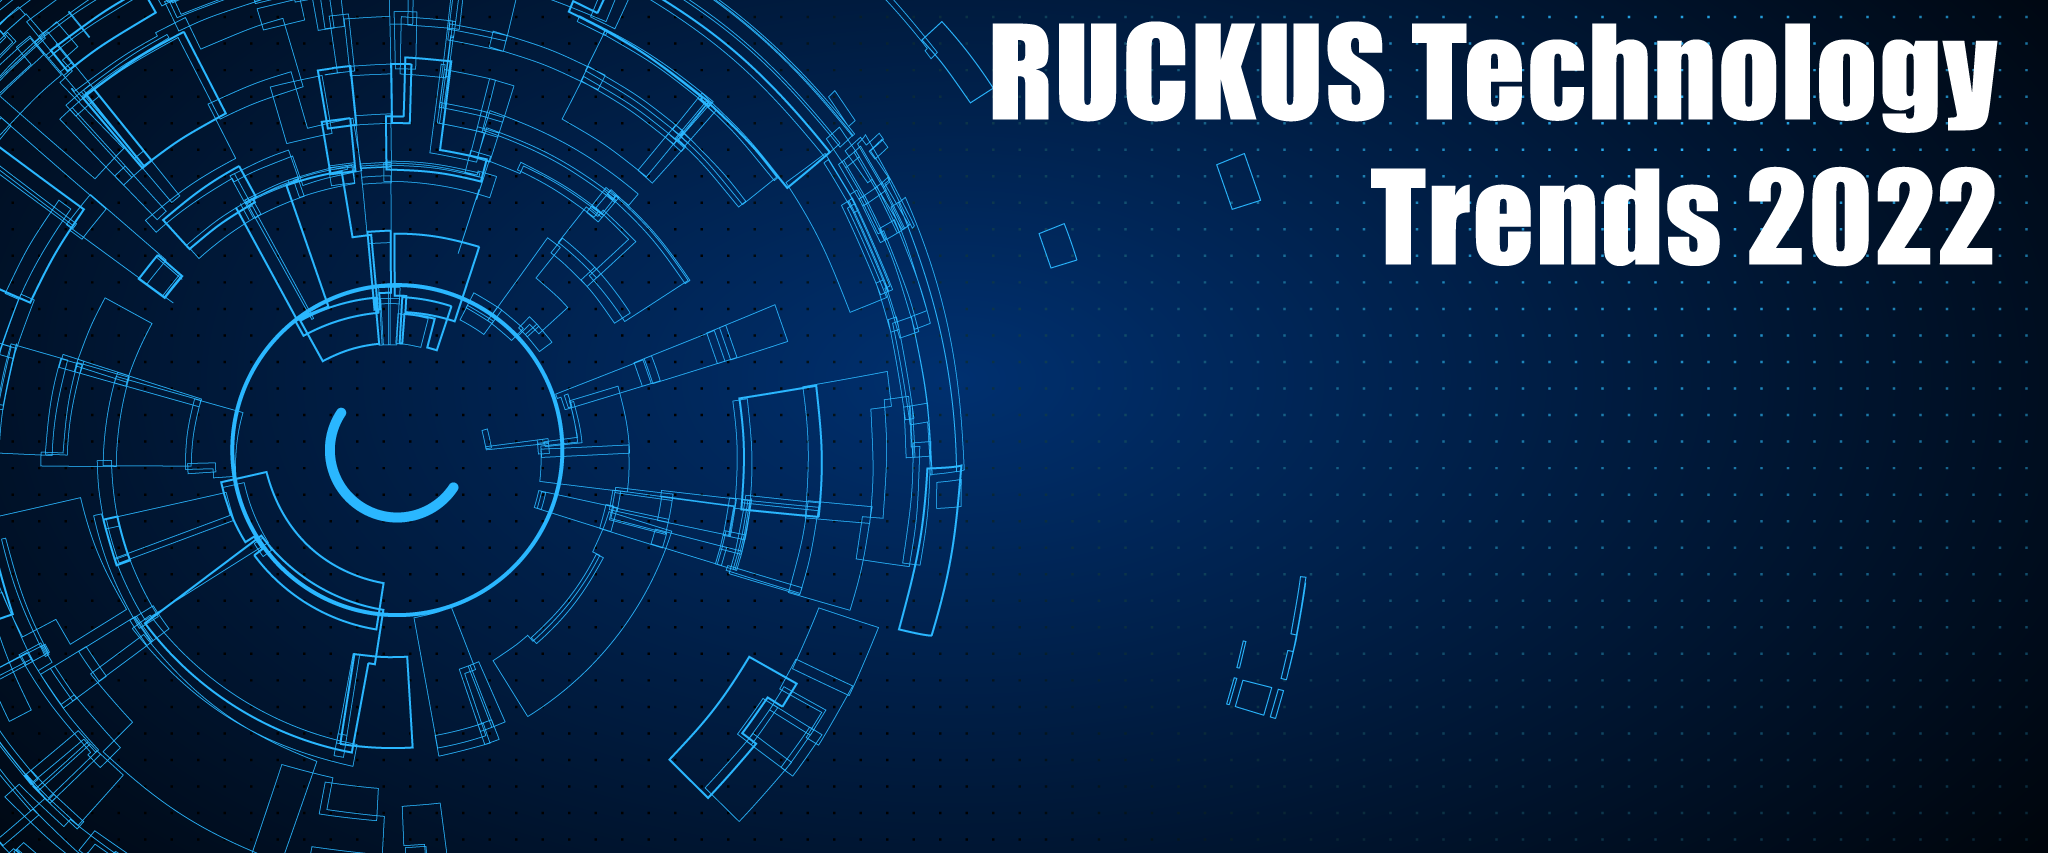 Optimus Webinar "RUCKUS Technology Trends 2022